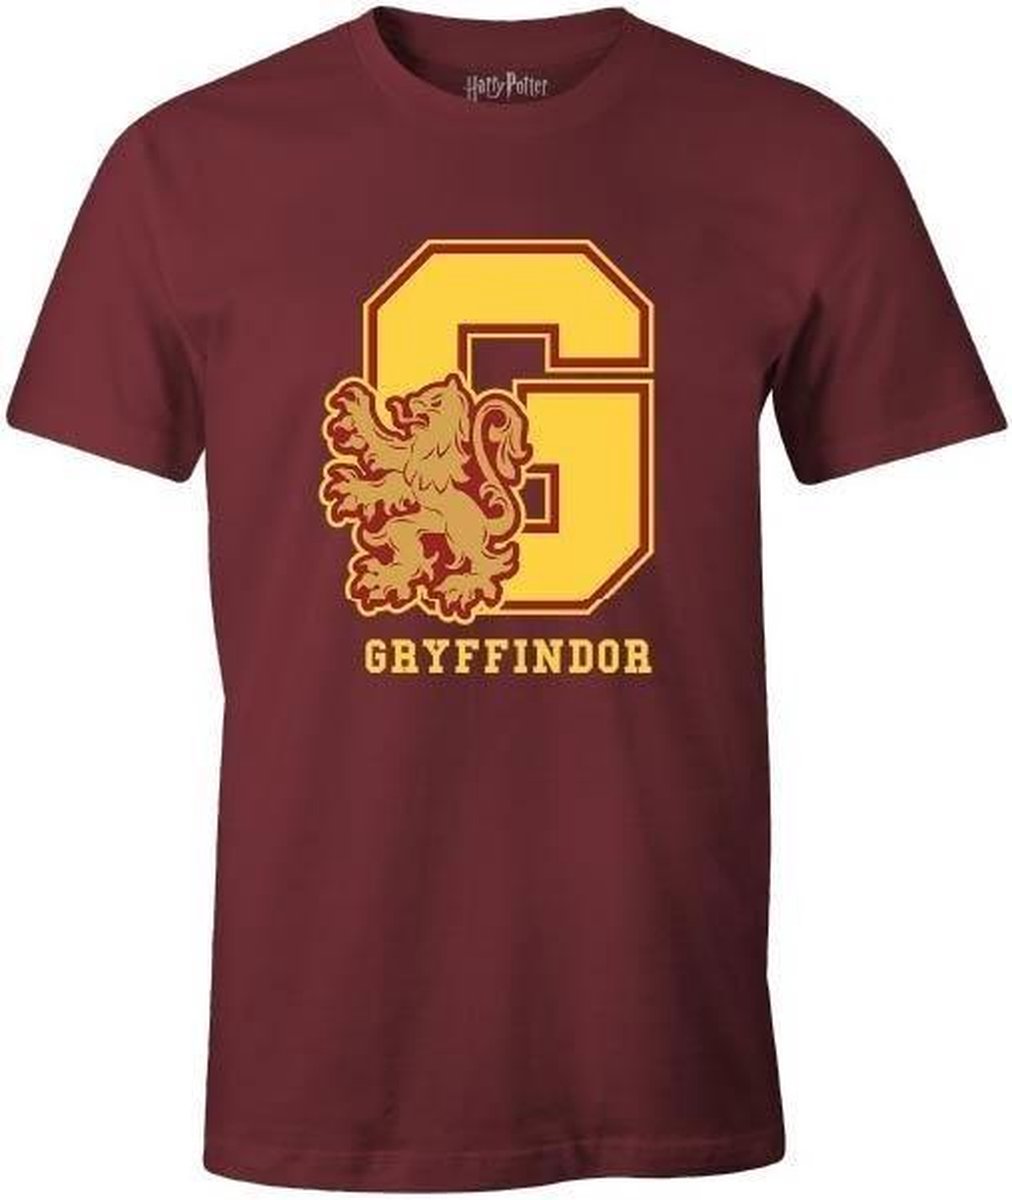 Harry Potter - Burgundy Men's T-shirt - G Gryffindor - S